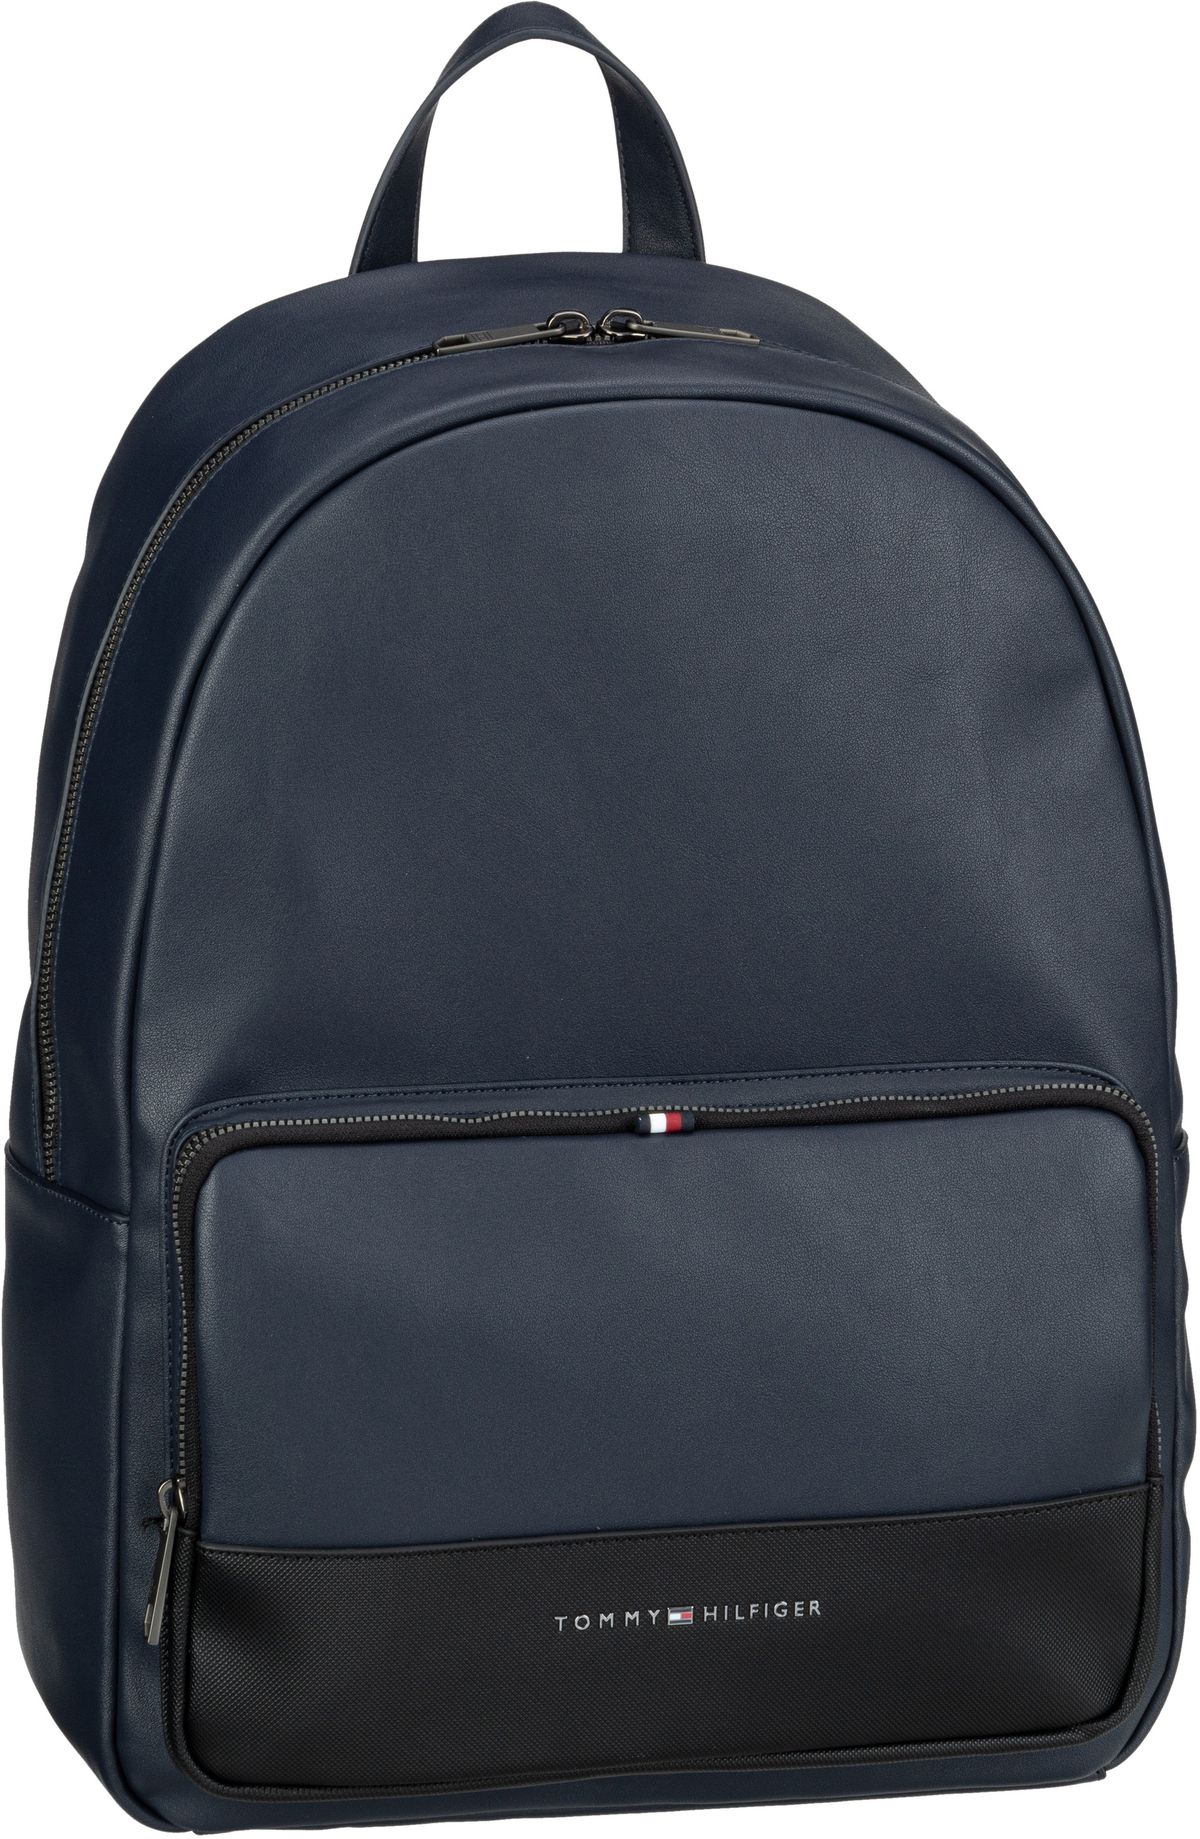 Tommy Hilfiger TH Essential Backpack SP23  in Navy (16 Liter), Rucksack / Backpack